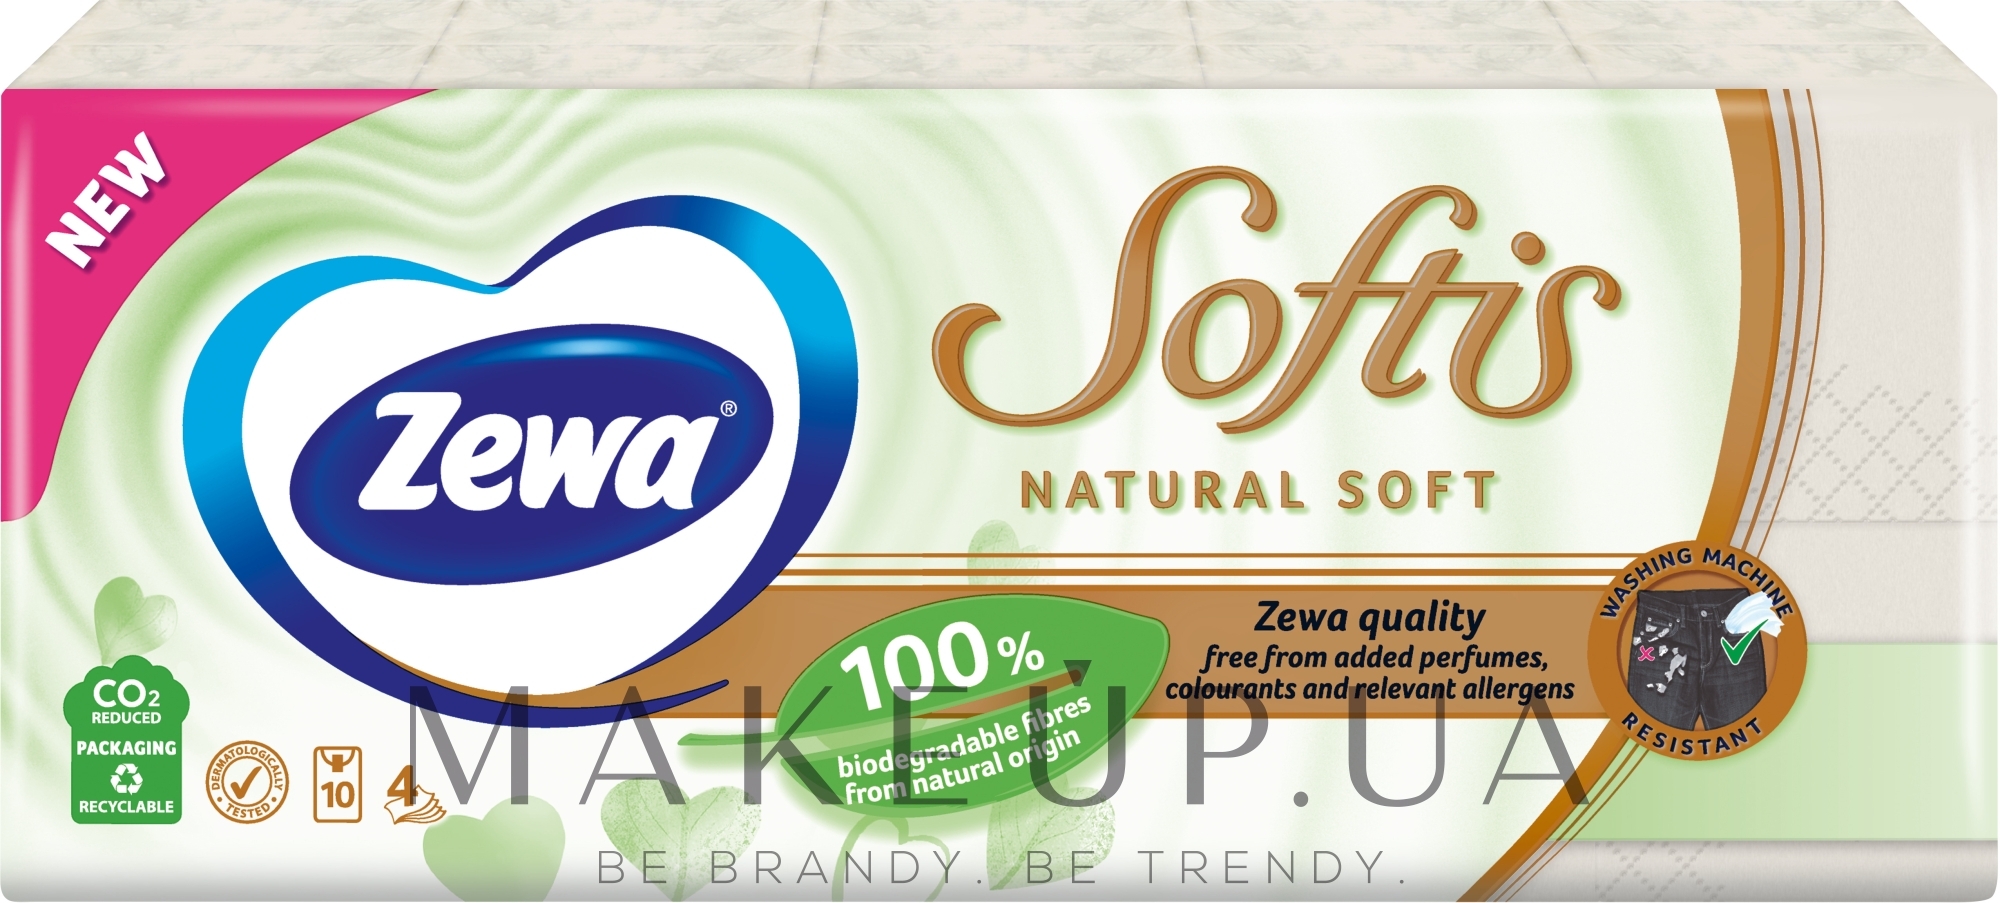 Носовые платки бумажные без аромата, четырехслойные, 10 упаковок по 9 шт - Zewa Softis Natural Soft — фото 10x9шт